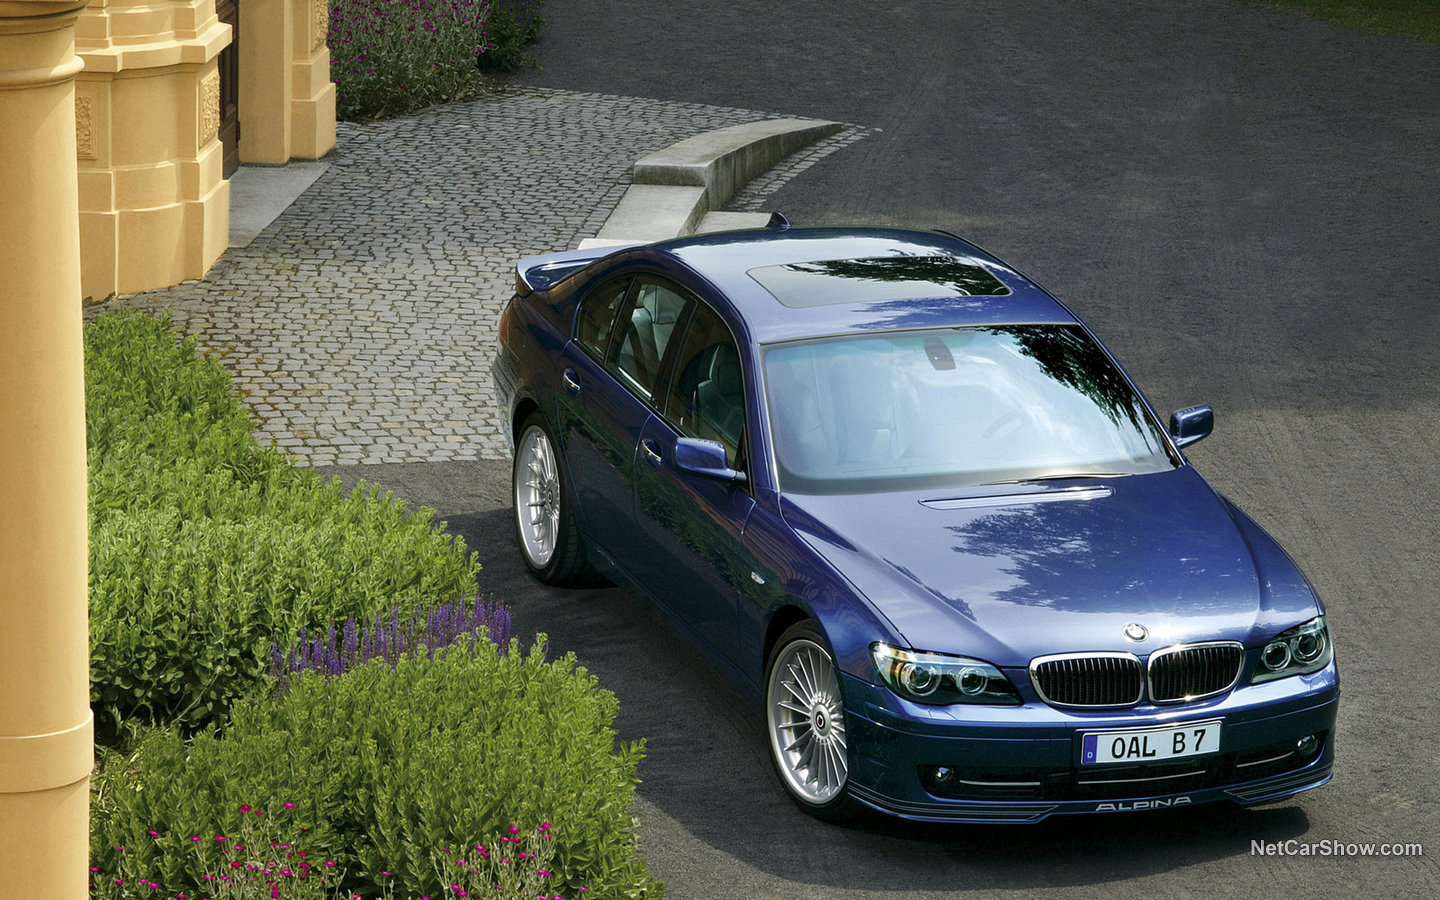 Alpina BMW B7 2006 567052ca